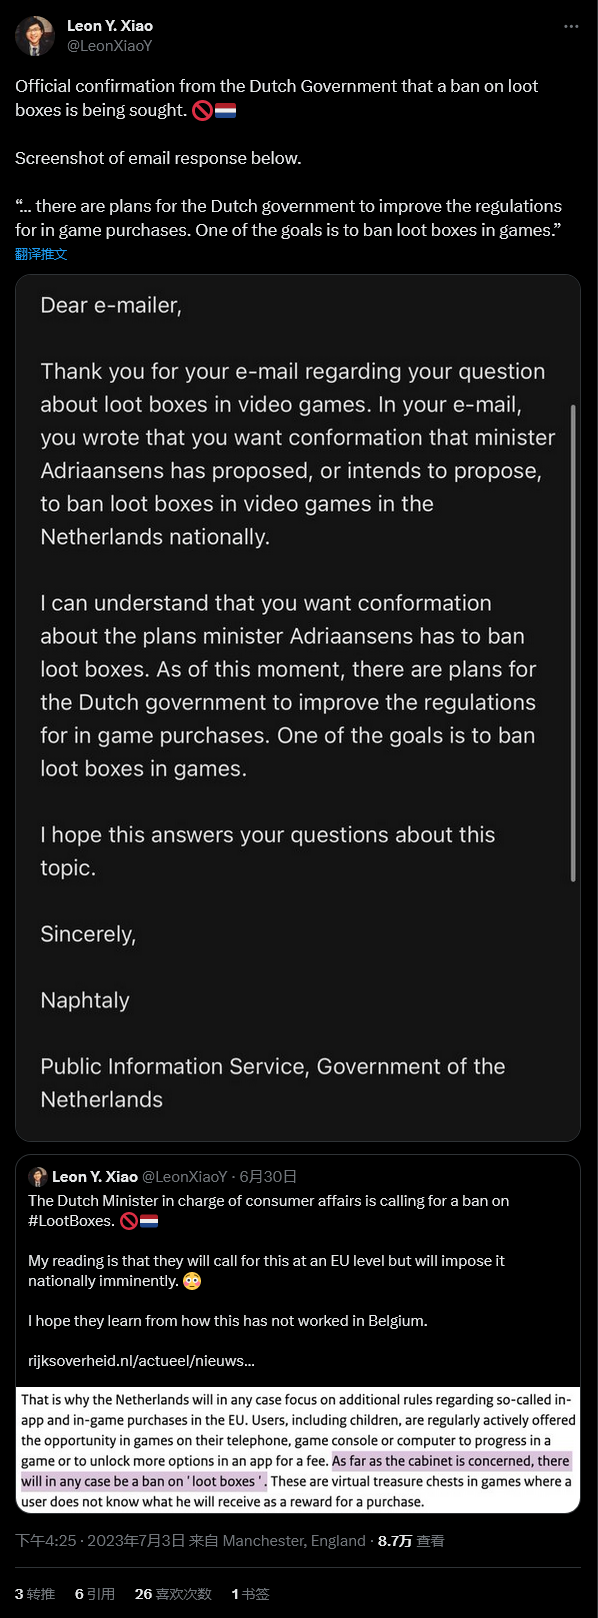 荷兰官方正寻求彻底封禁游戏内战利品箱机制